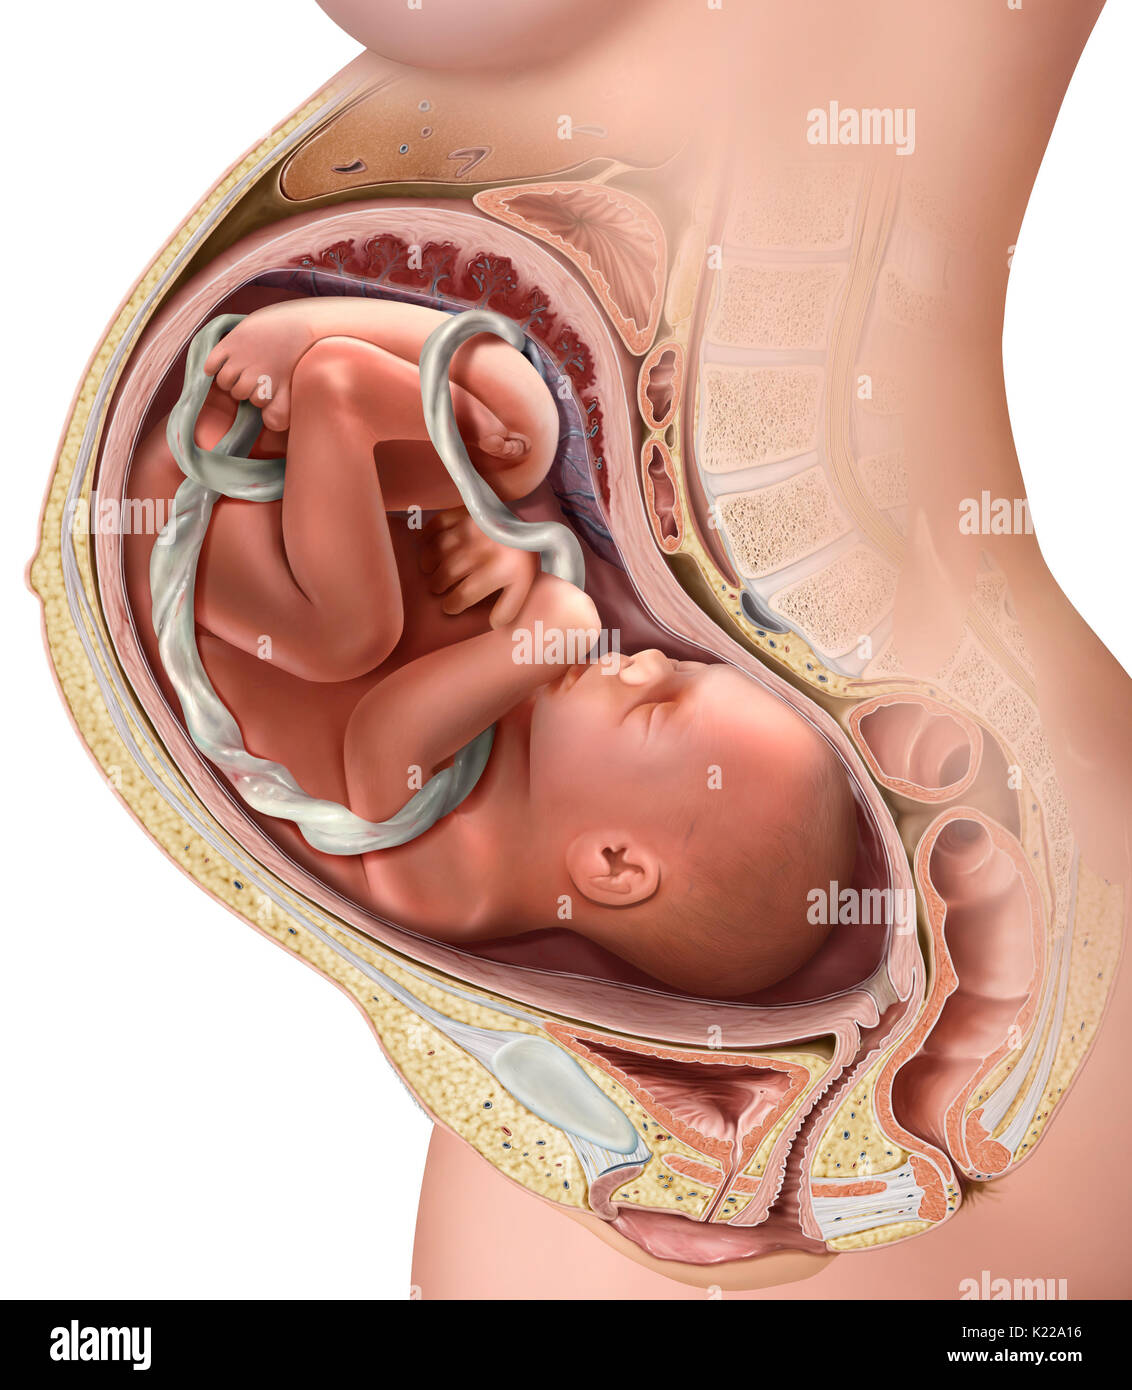 Questa immagine mostra il feto al terzo trimestre di gravidanza Foto stock  - Alamy